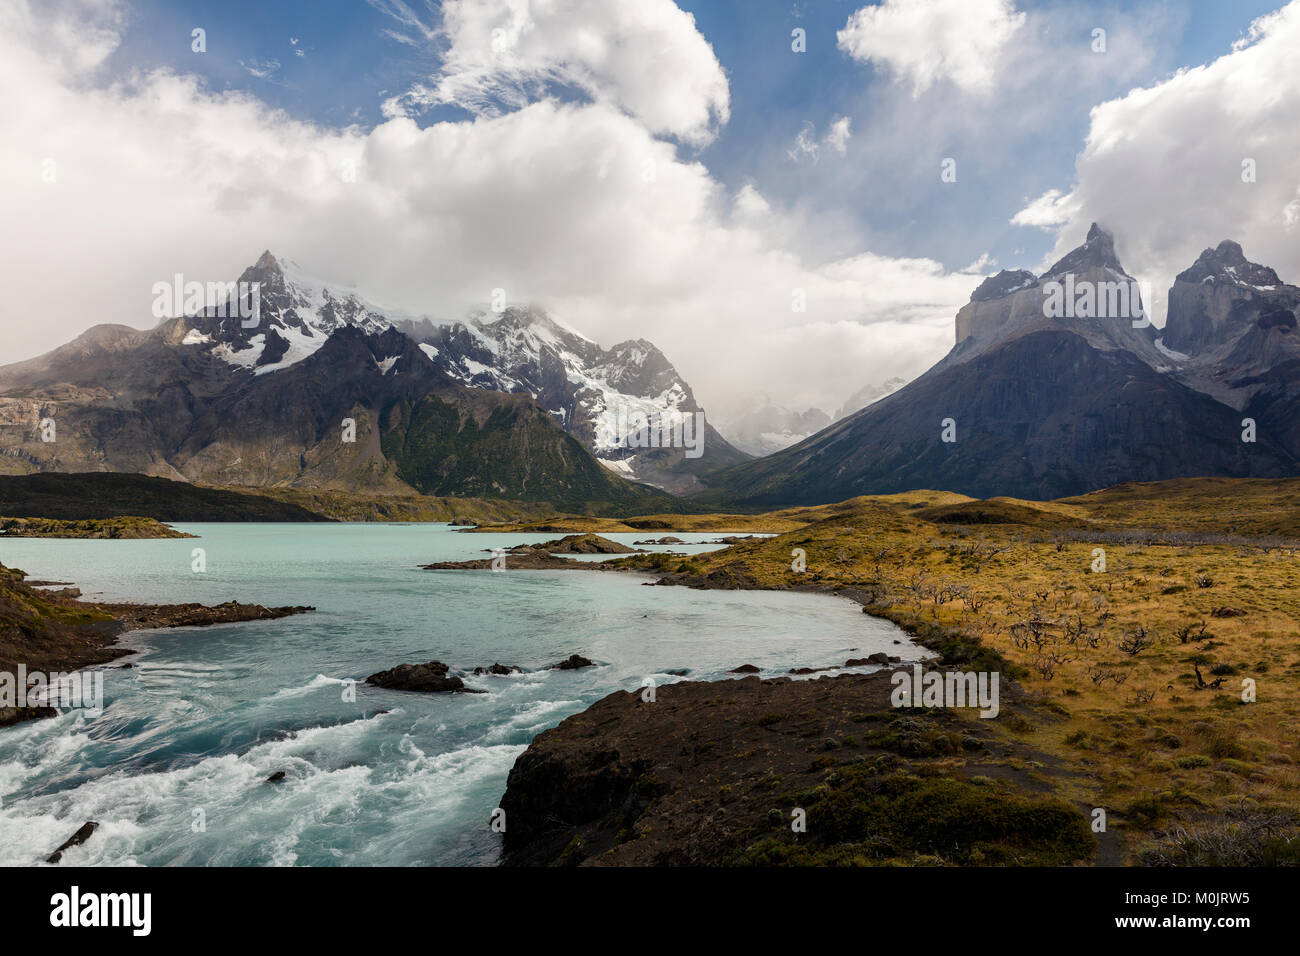 Cuernos del Paine les montagnes avec des glaciers, de la rivière Rio Paine Parc National Torres del Paine, Région de Magallanes et l'Antarctique, Chili Banque D'Images